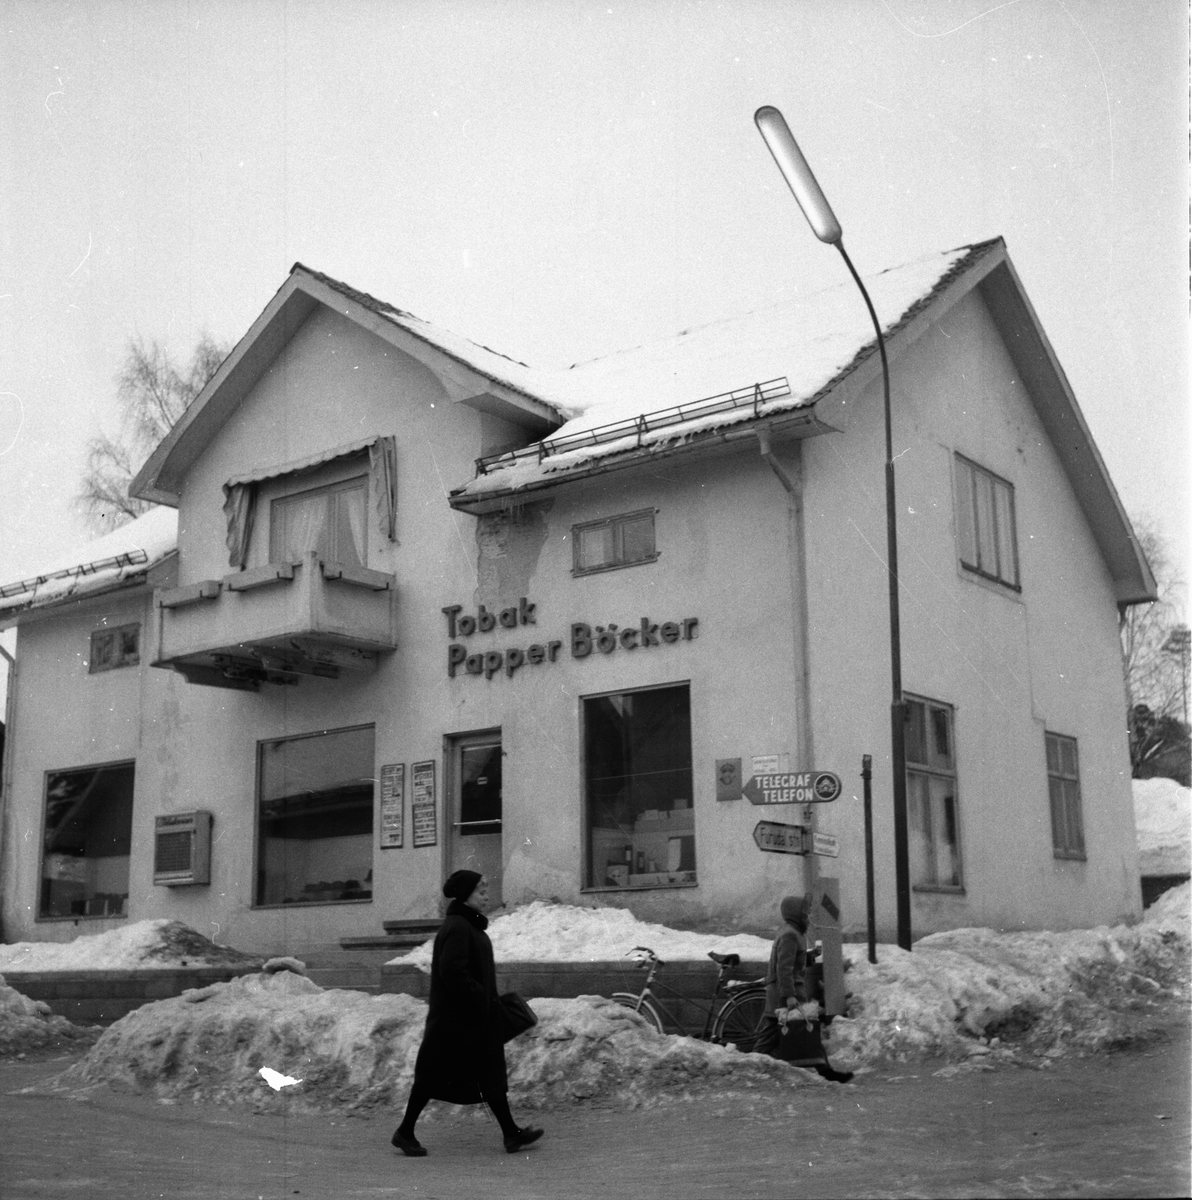 Furudal, affärsbyggnad.
Orenappet gör upp,
22 Febr 1959